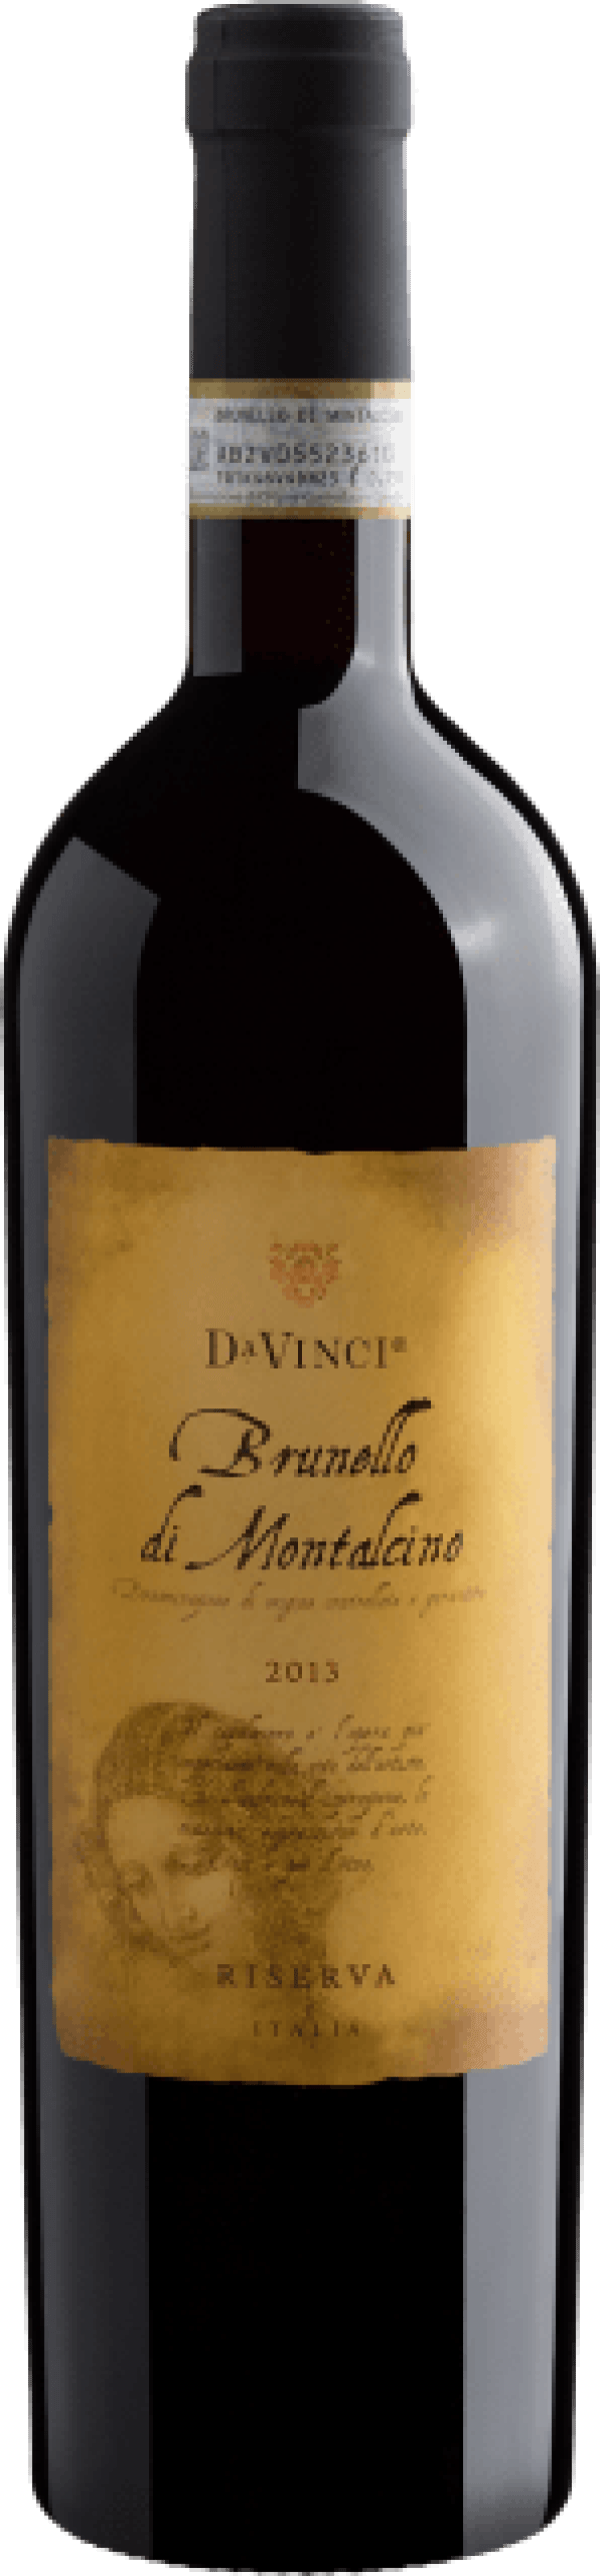 Da Vinci Brunello di Montalcino Riserva DOCG 2013